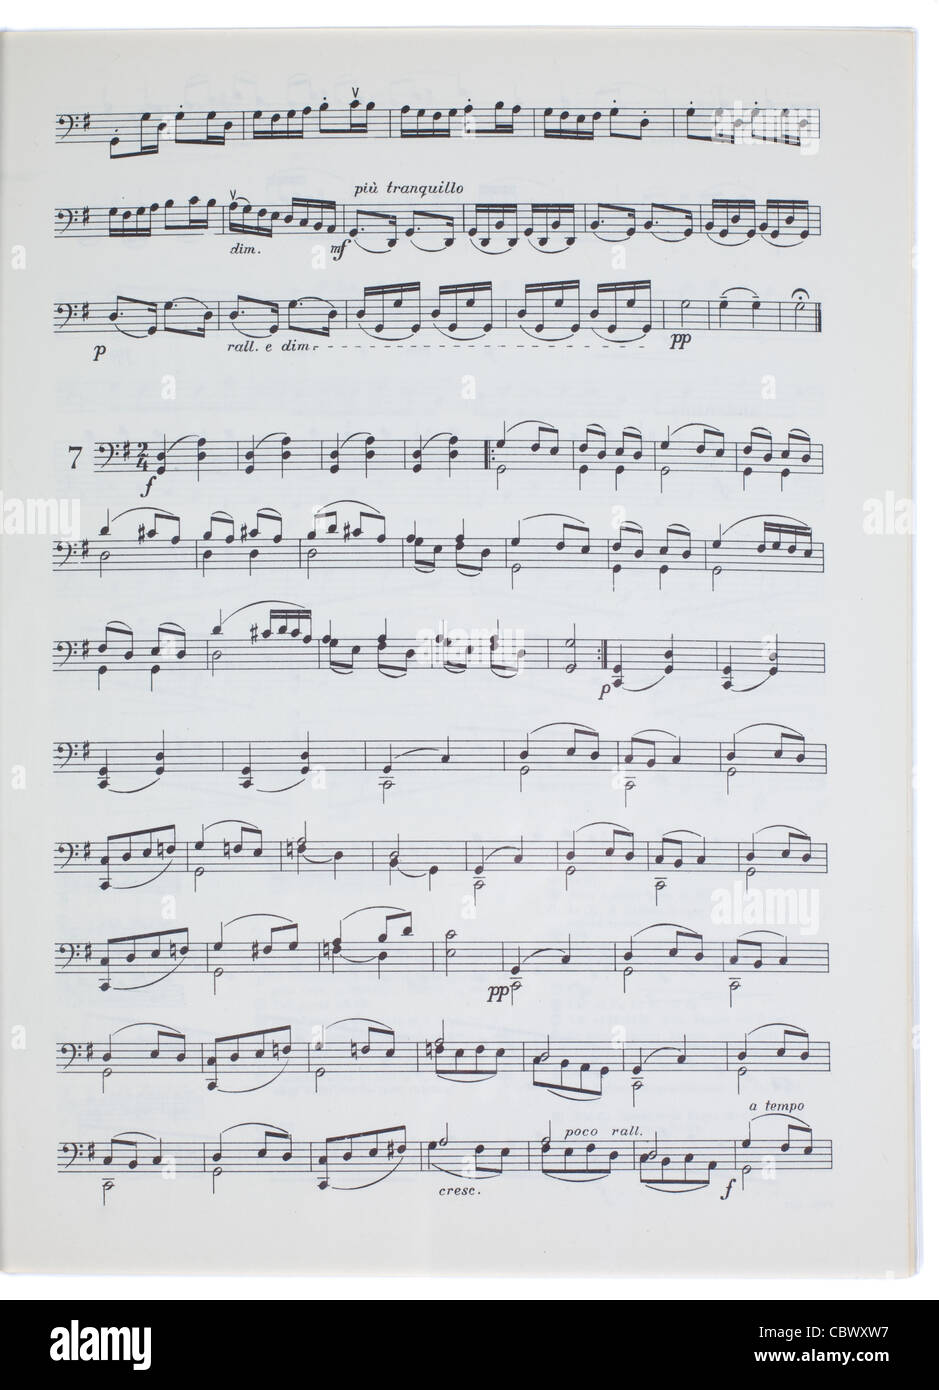 music sheet isolated on white background Stock Photo